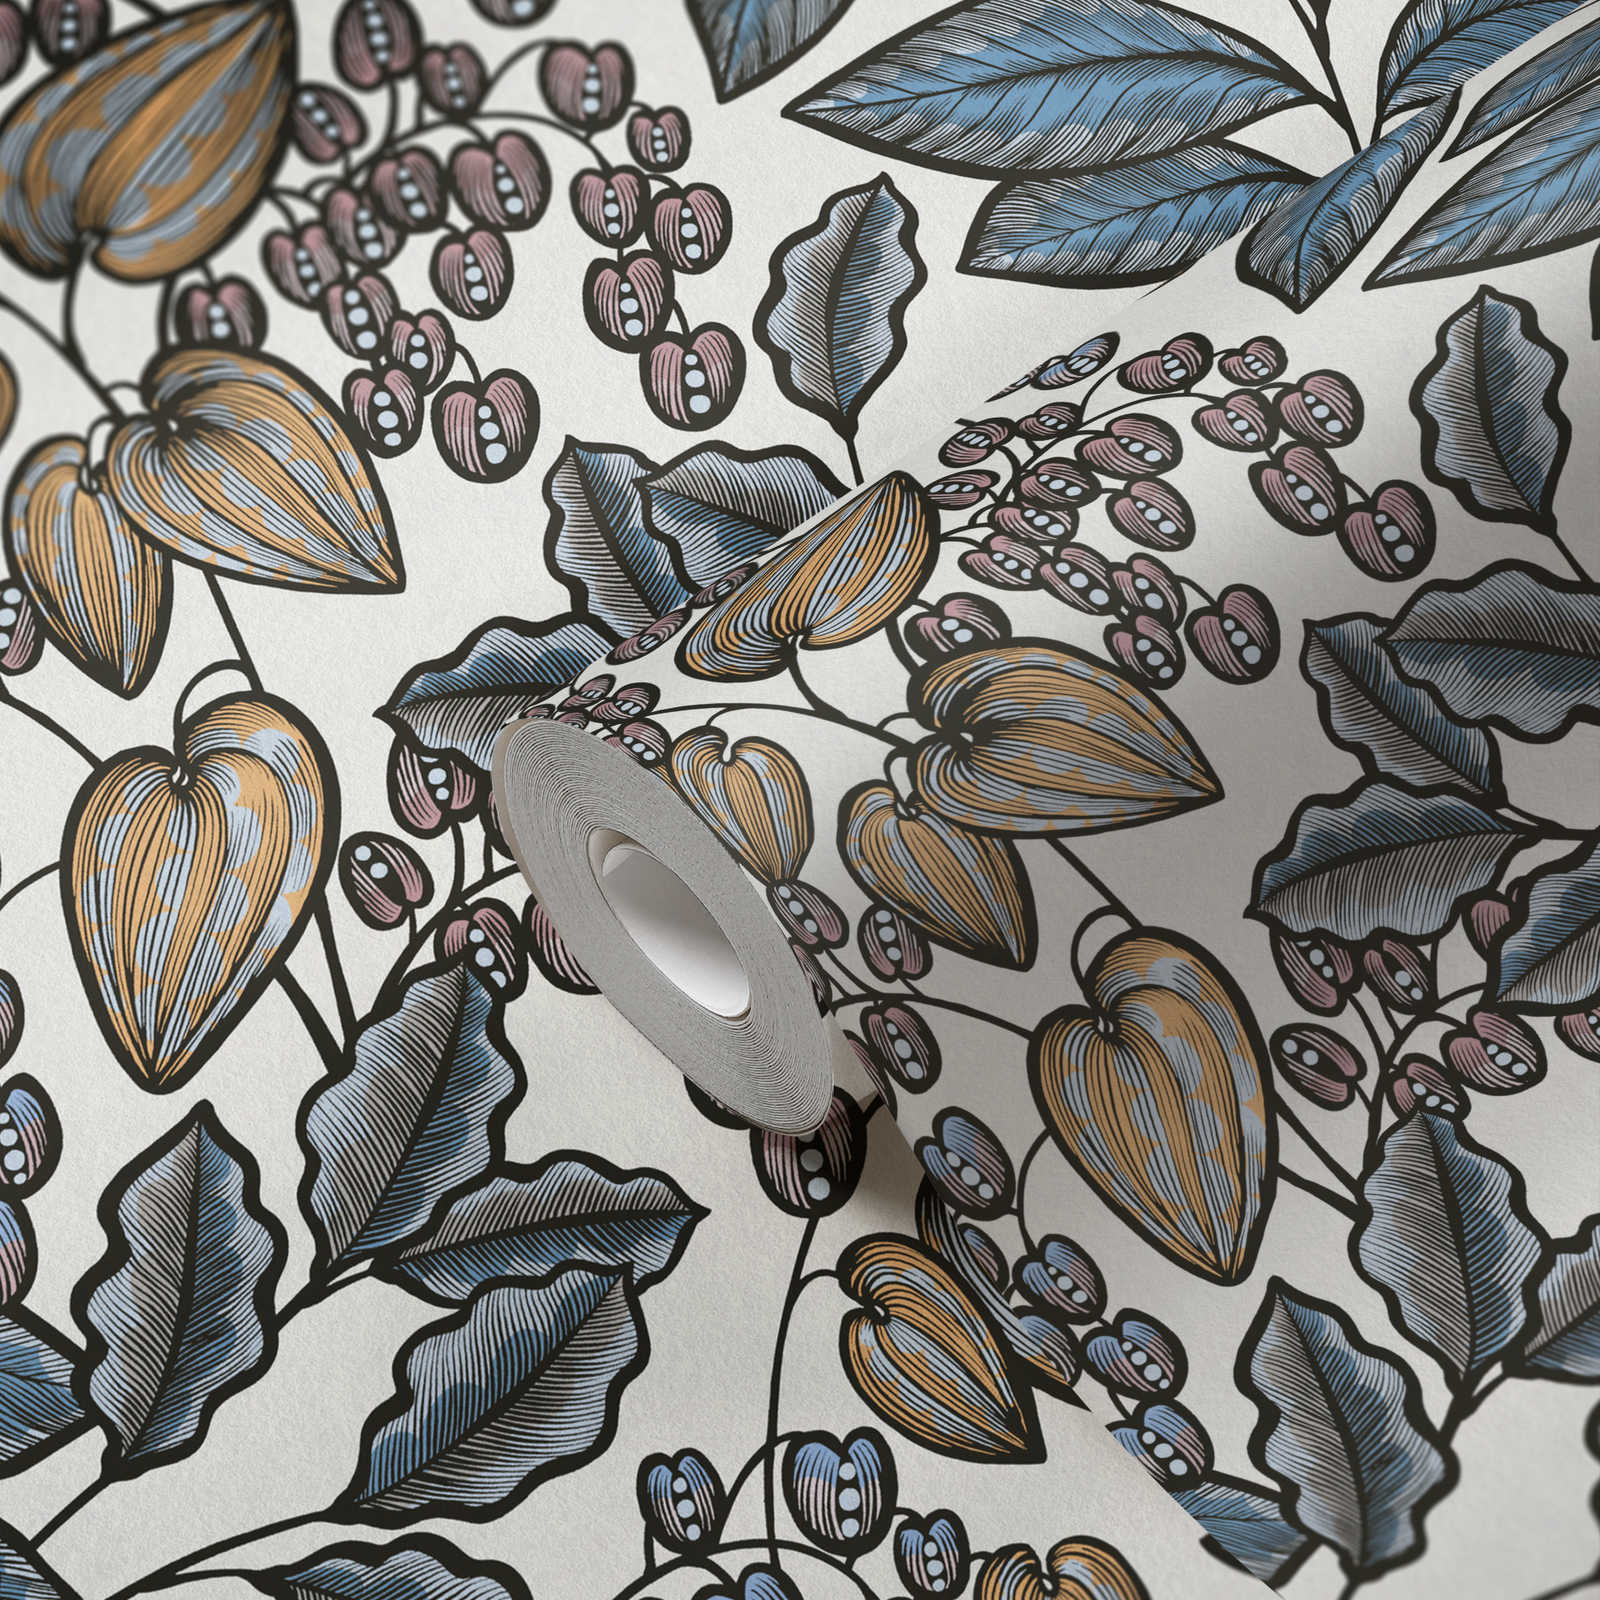             Moderne Tapete Blätter Muster im Retro Look – Blau, Weiß, Gelb
        